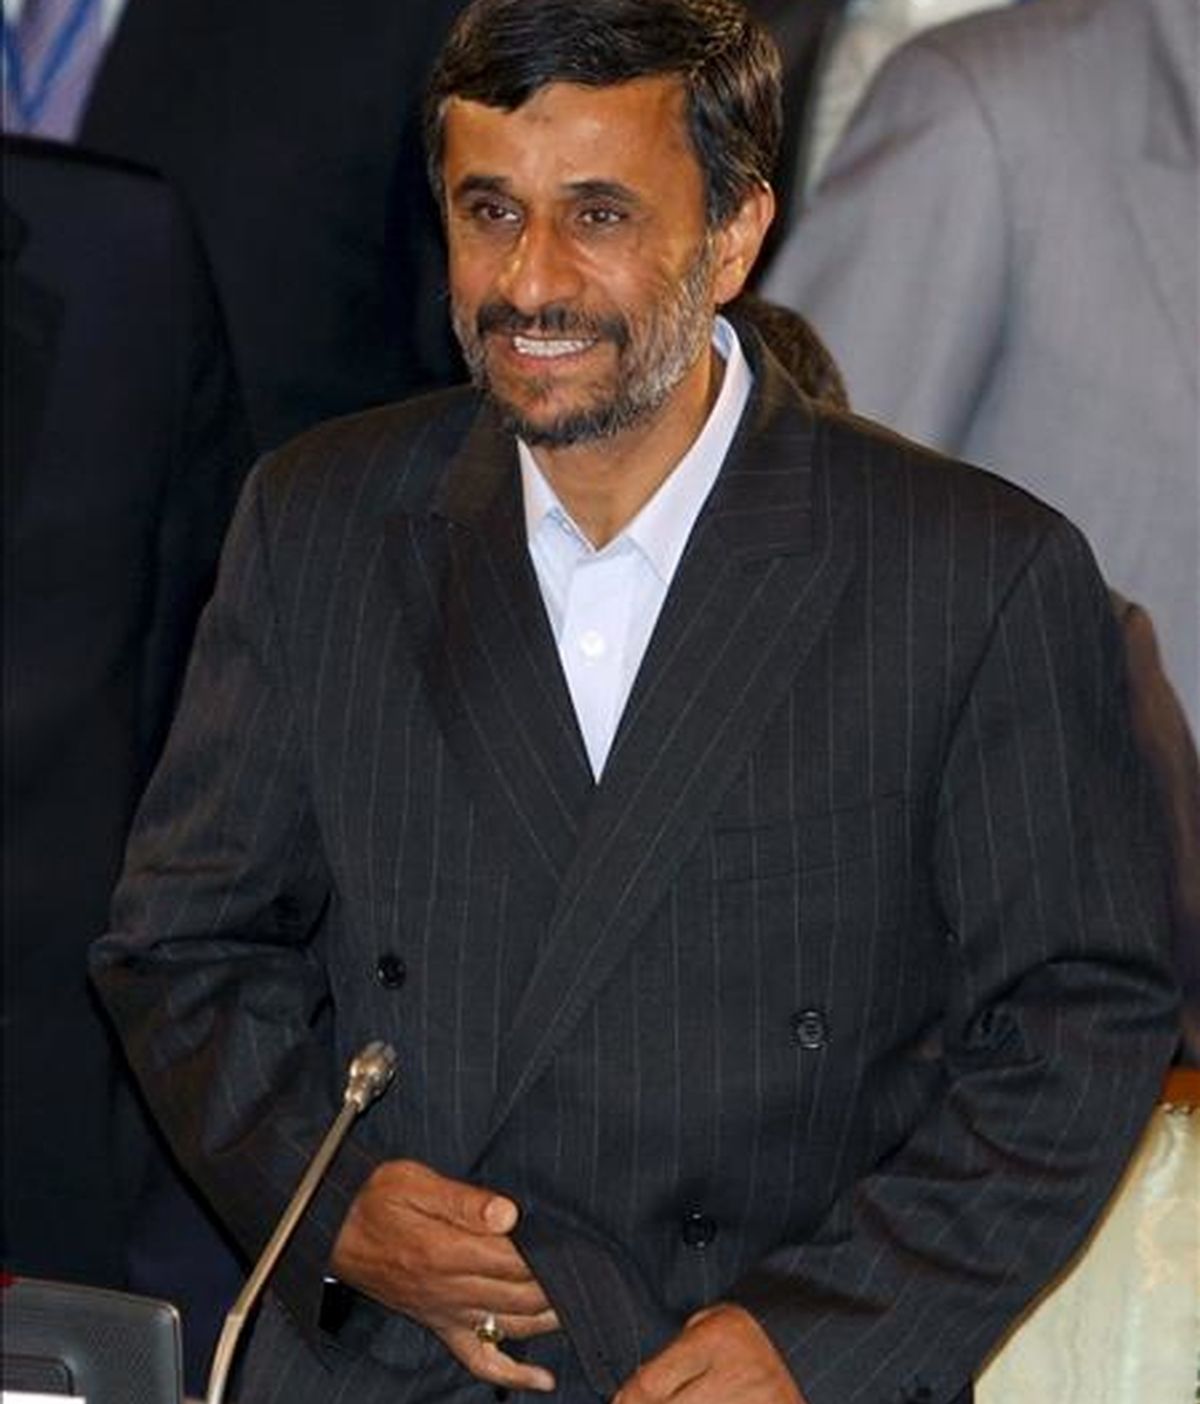 El presidente de Irán, Mahmud Ahmadineyad, durante la segunda jornada de la reunión de la Organización de Cooperación de Shangai (SCO) que se celebró en Yekaterimburgo, Rusia, hoy martes 16 de junio. EFE